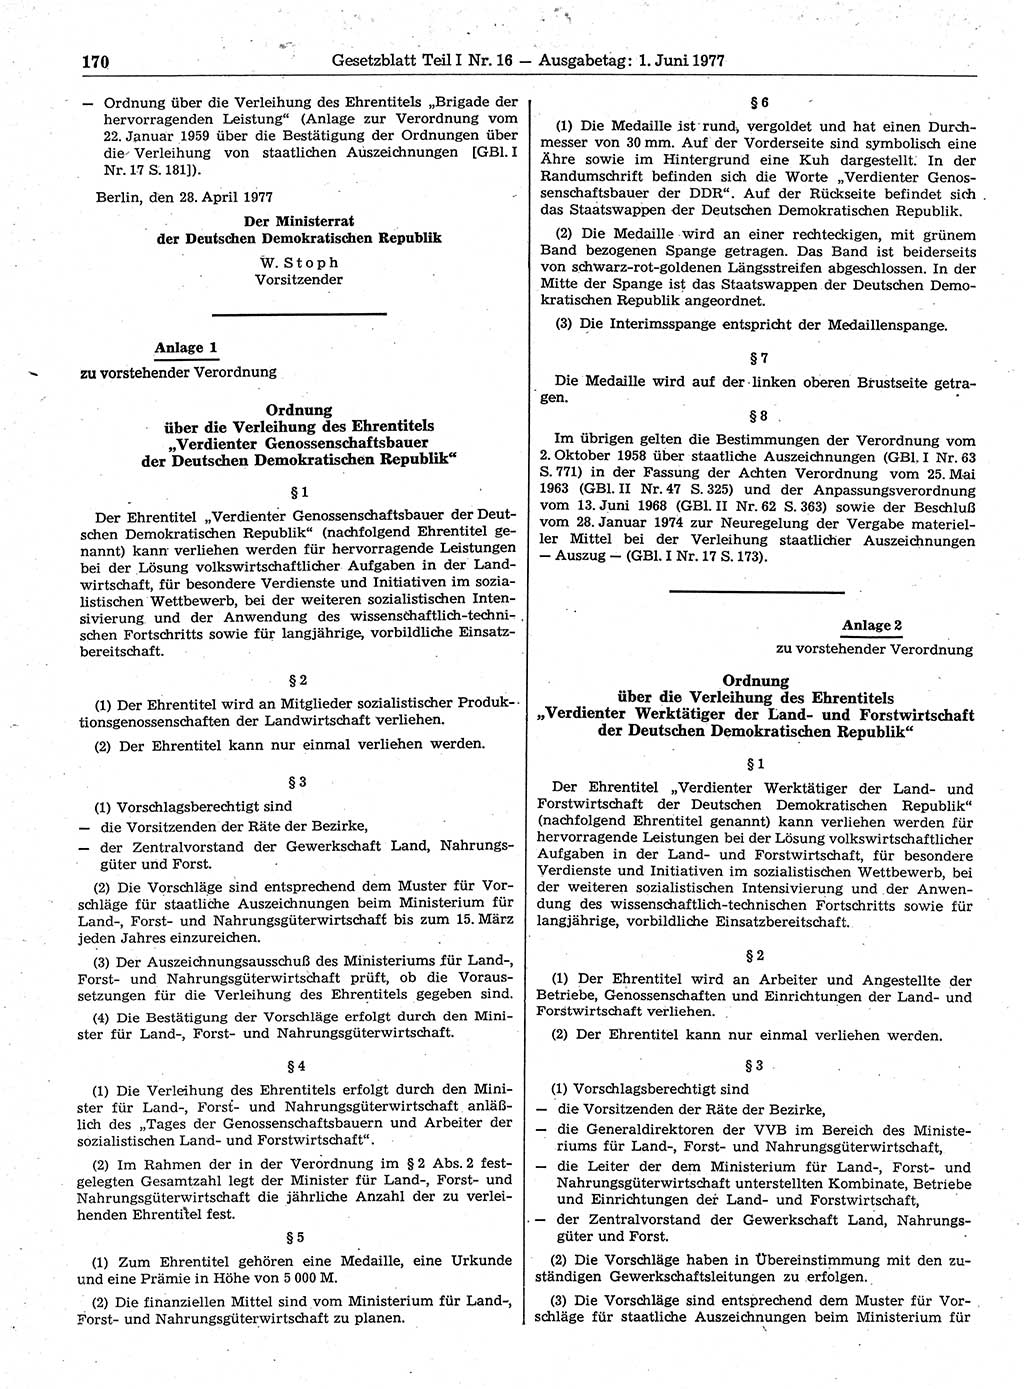 Gesetzblatt (GBl.) der Deutschen Demokratischen Republik (DDR) Teil Ⅰ 1977, Seite 170 (GBl. DDR Ⅰ 1977, S. 170)